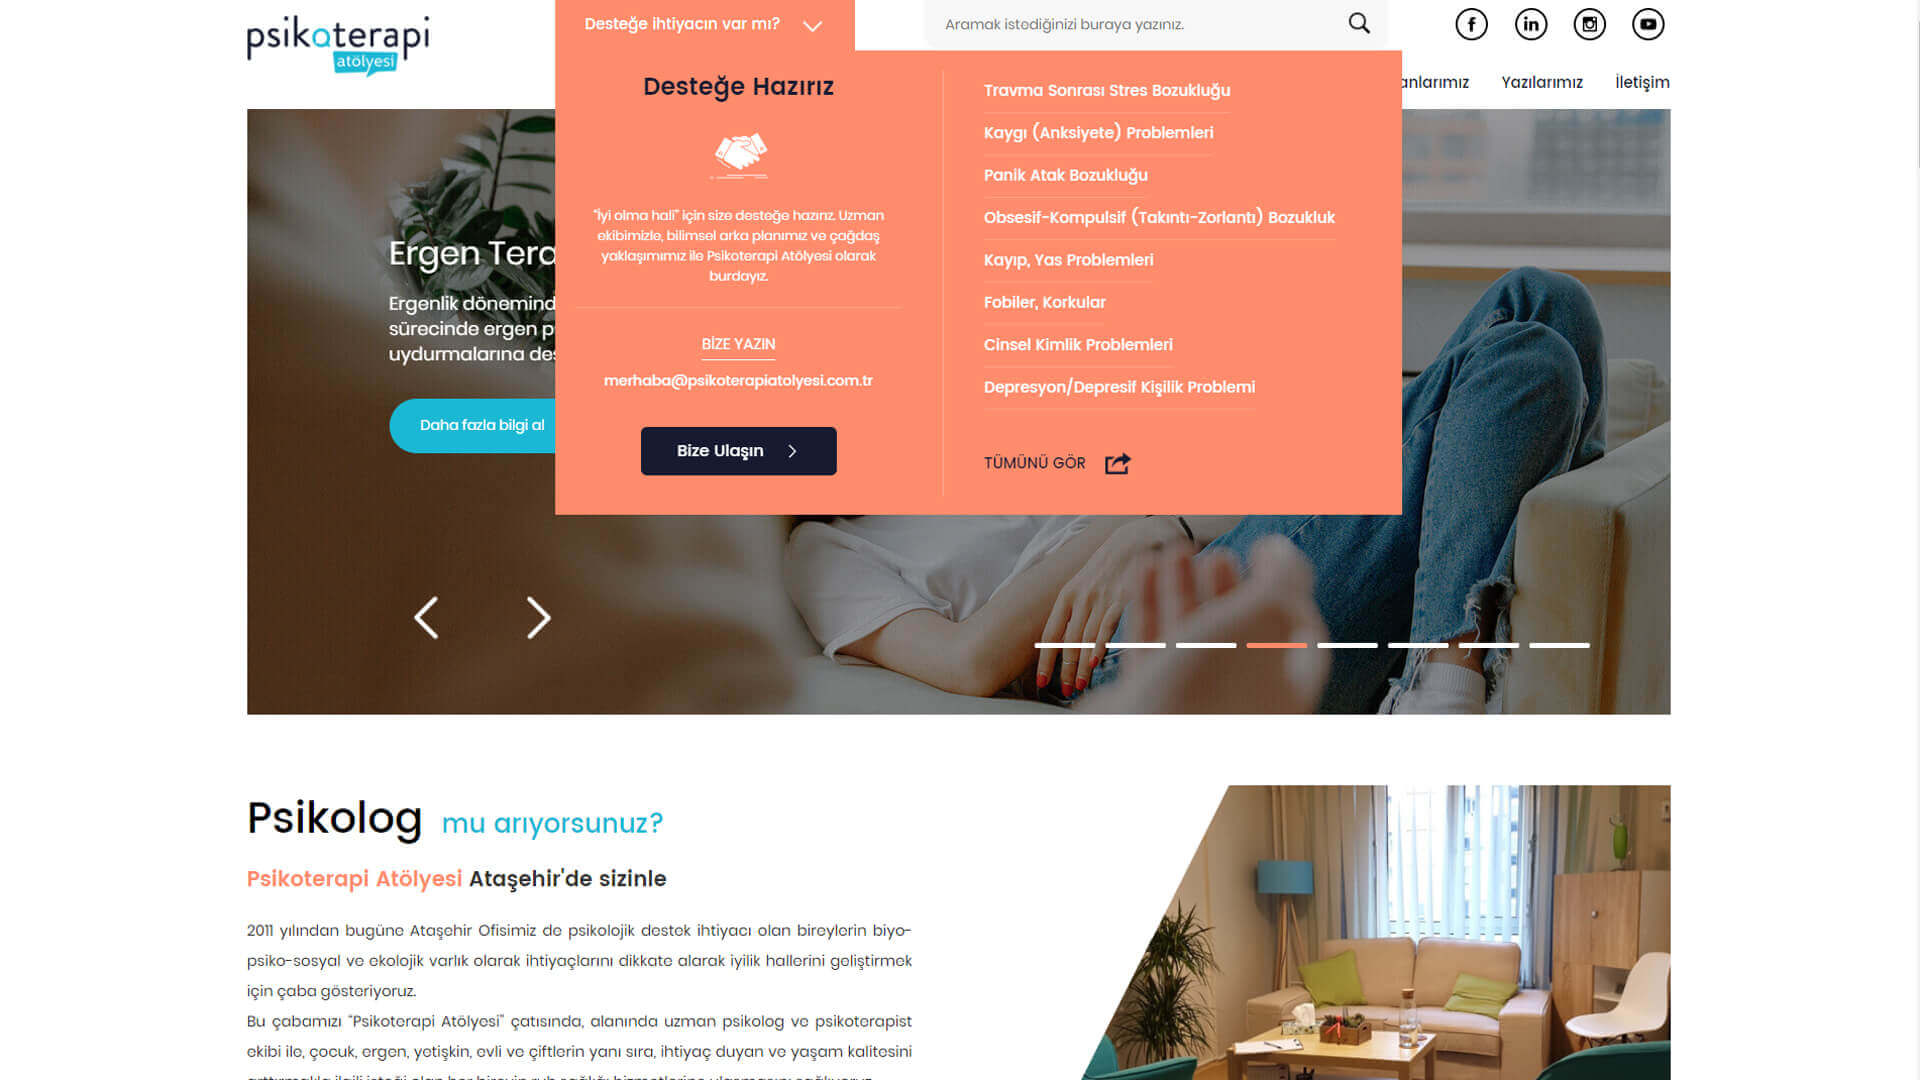 Psikoterapi Atölyesi Web Sitesi Anasayfa Tasarımı